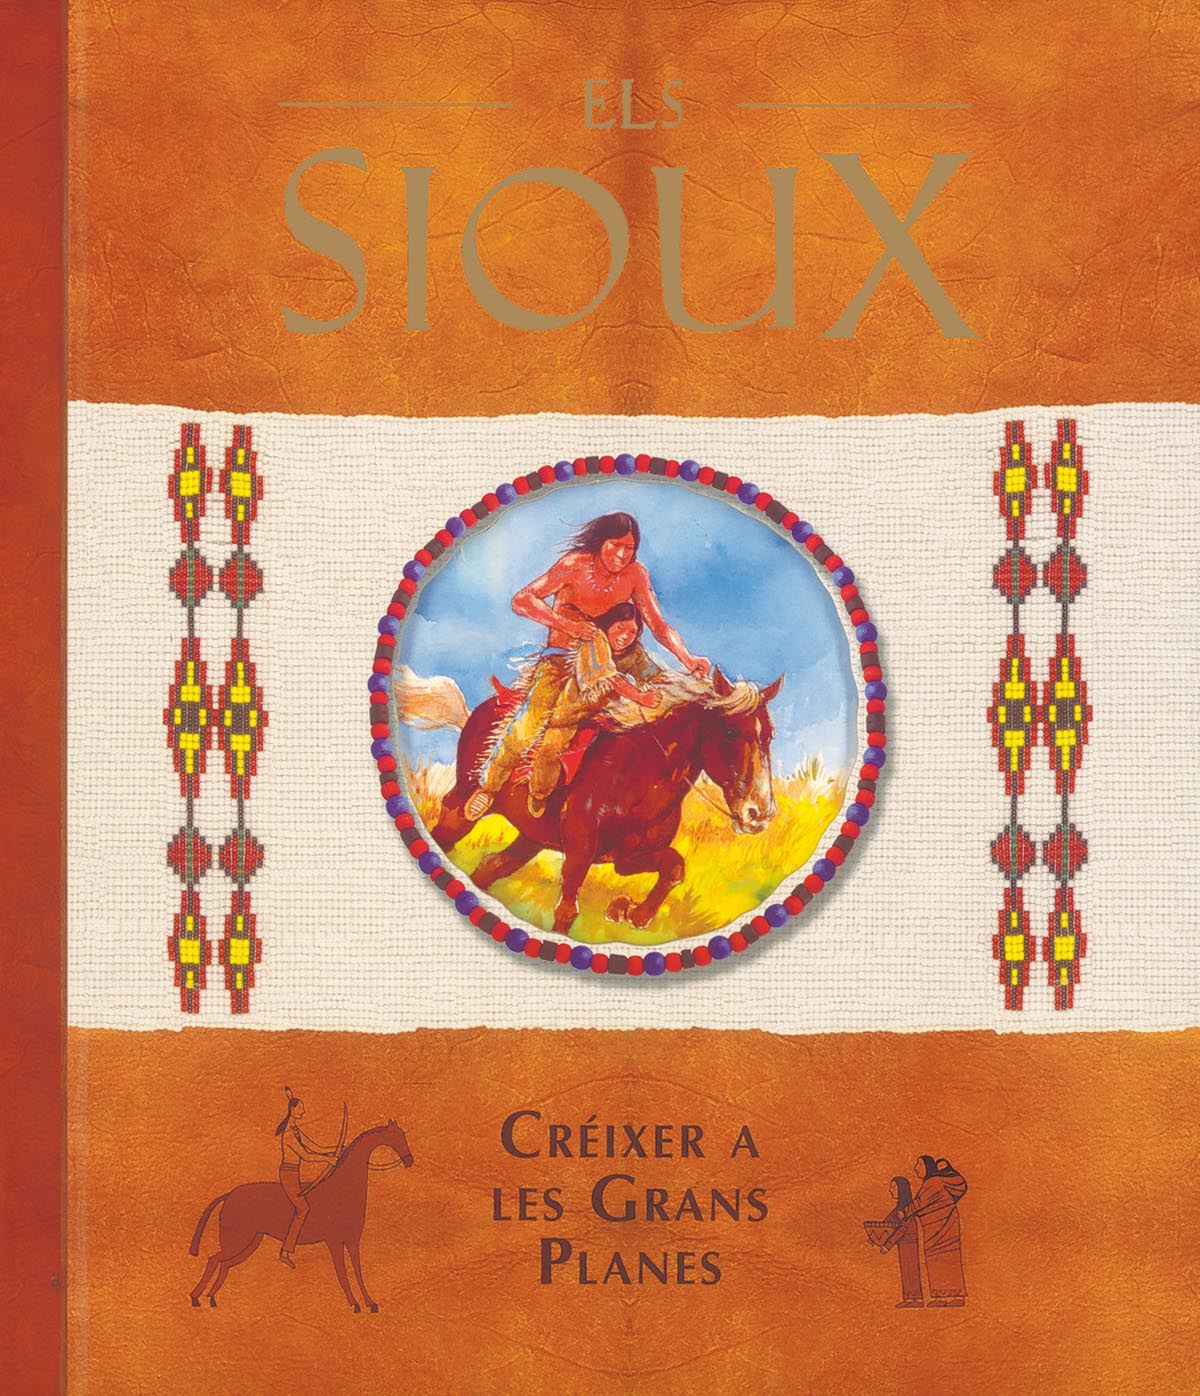 Els Sioux